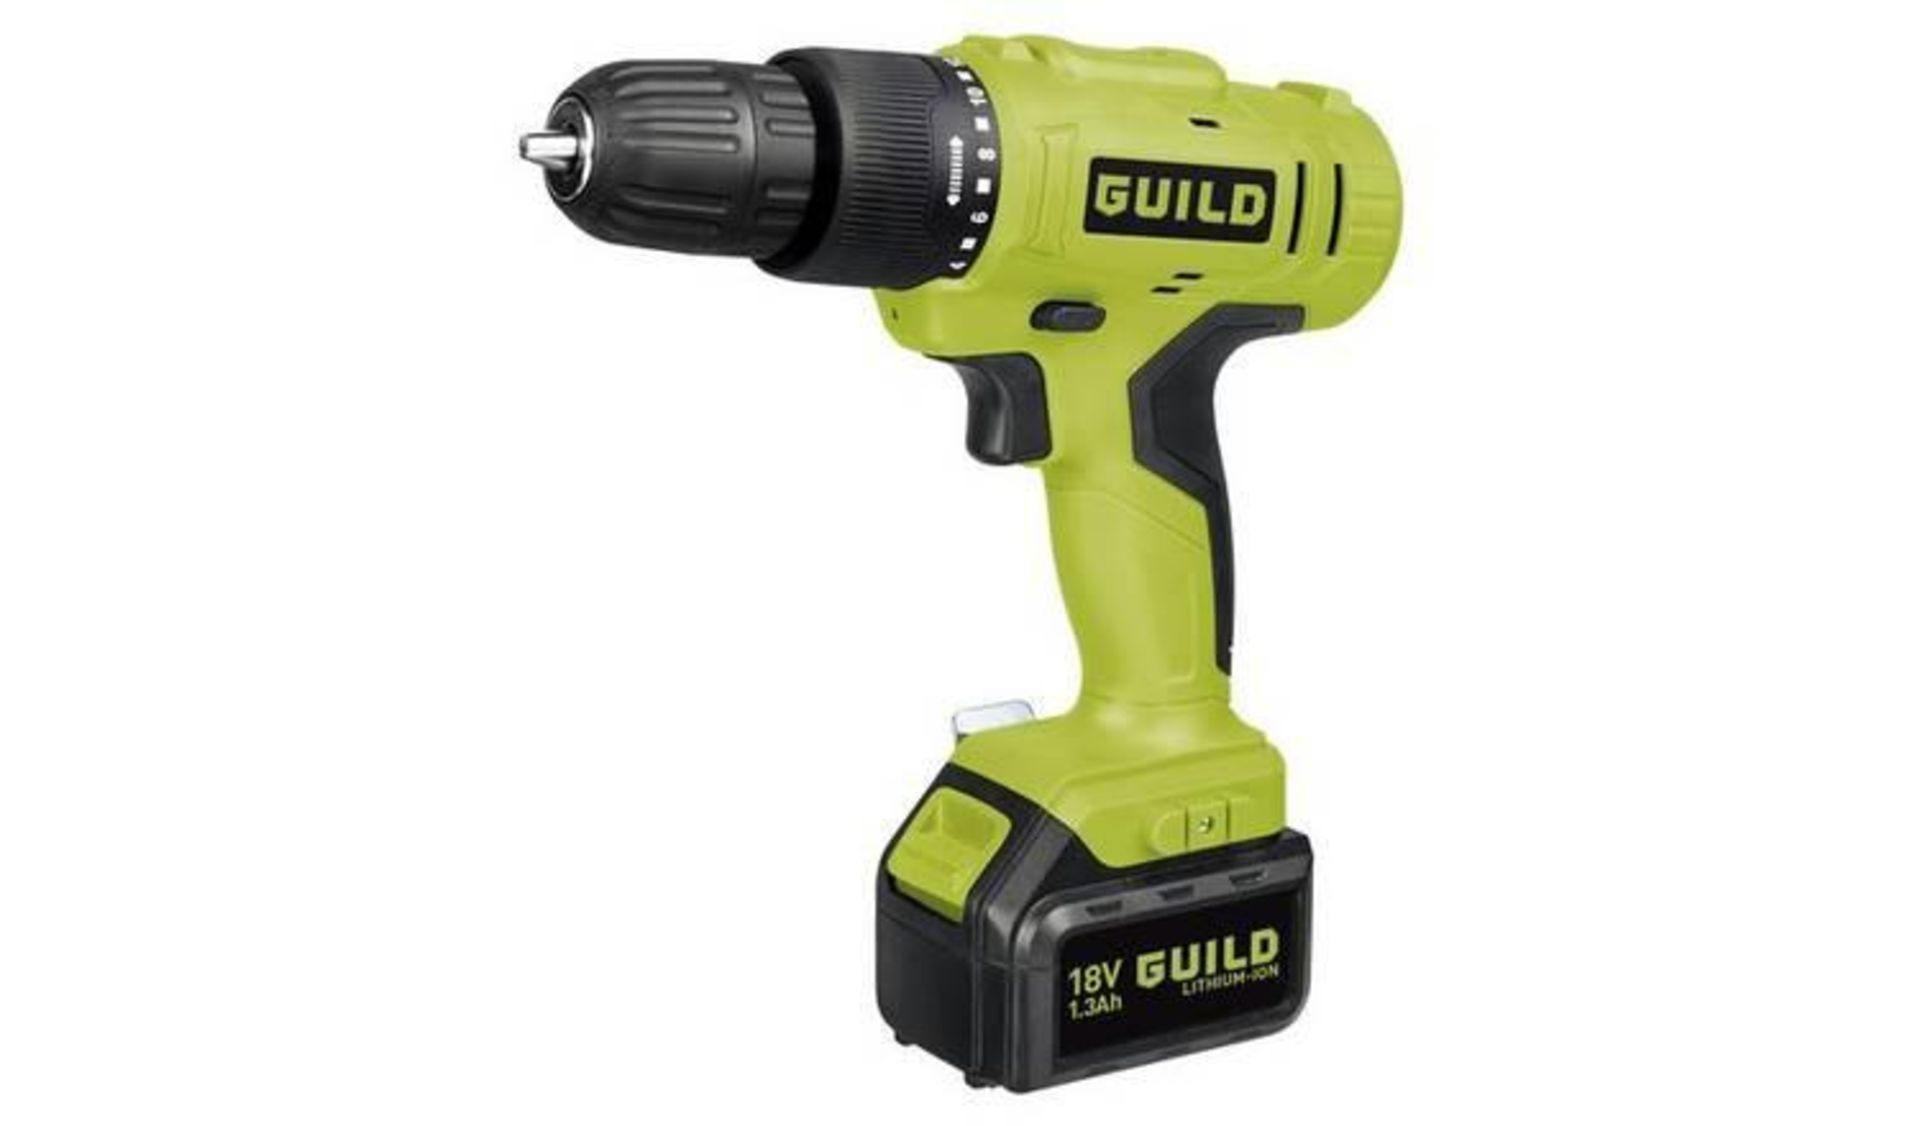 Guild 1.3Ah Cordless Hammer Drill - 18V CDI118GL 461/8618 £35.00 RRP